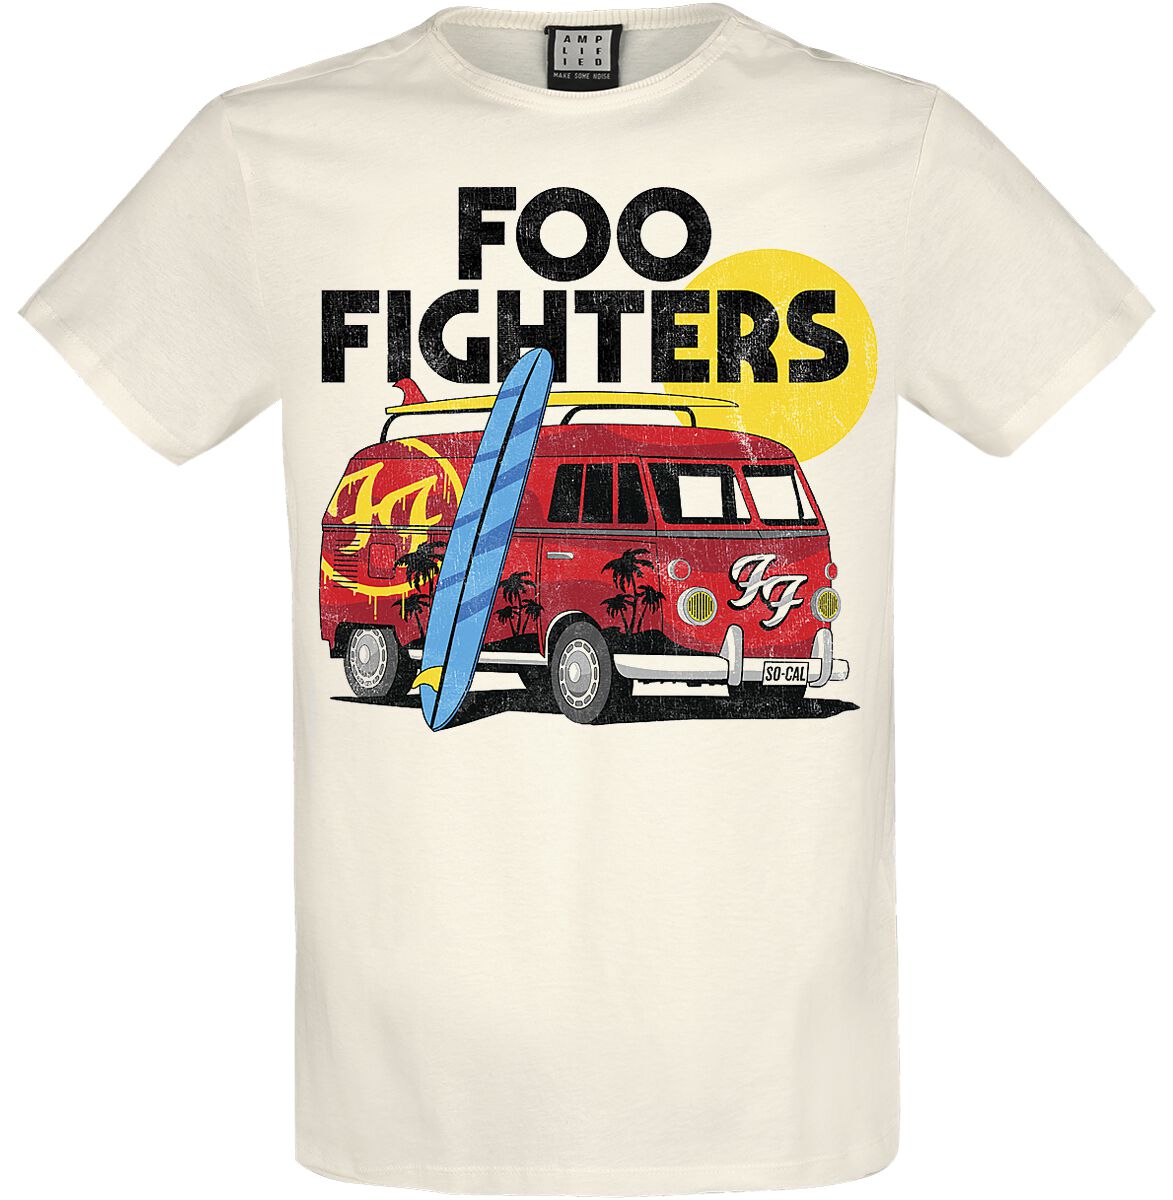 Foo Fighters T-Shirt - Amplified Collection - Camper Van - XS bis 3XL - für Männer - Größe XXL - altweiß  - Lizenziertes Merchandise!